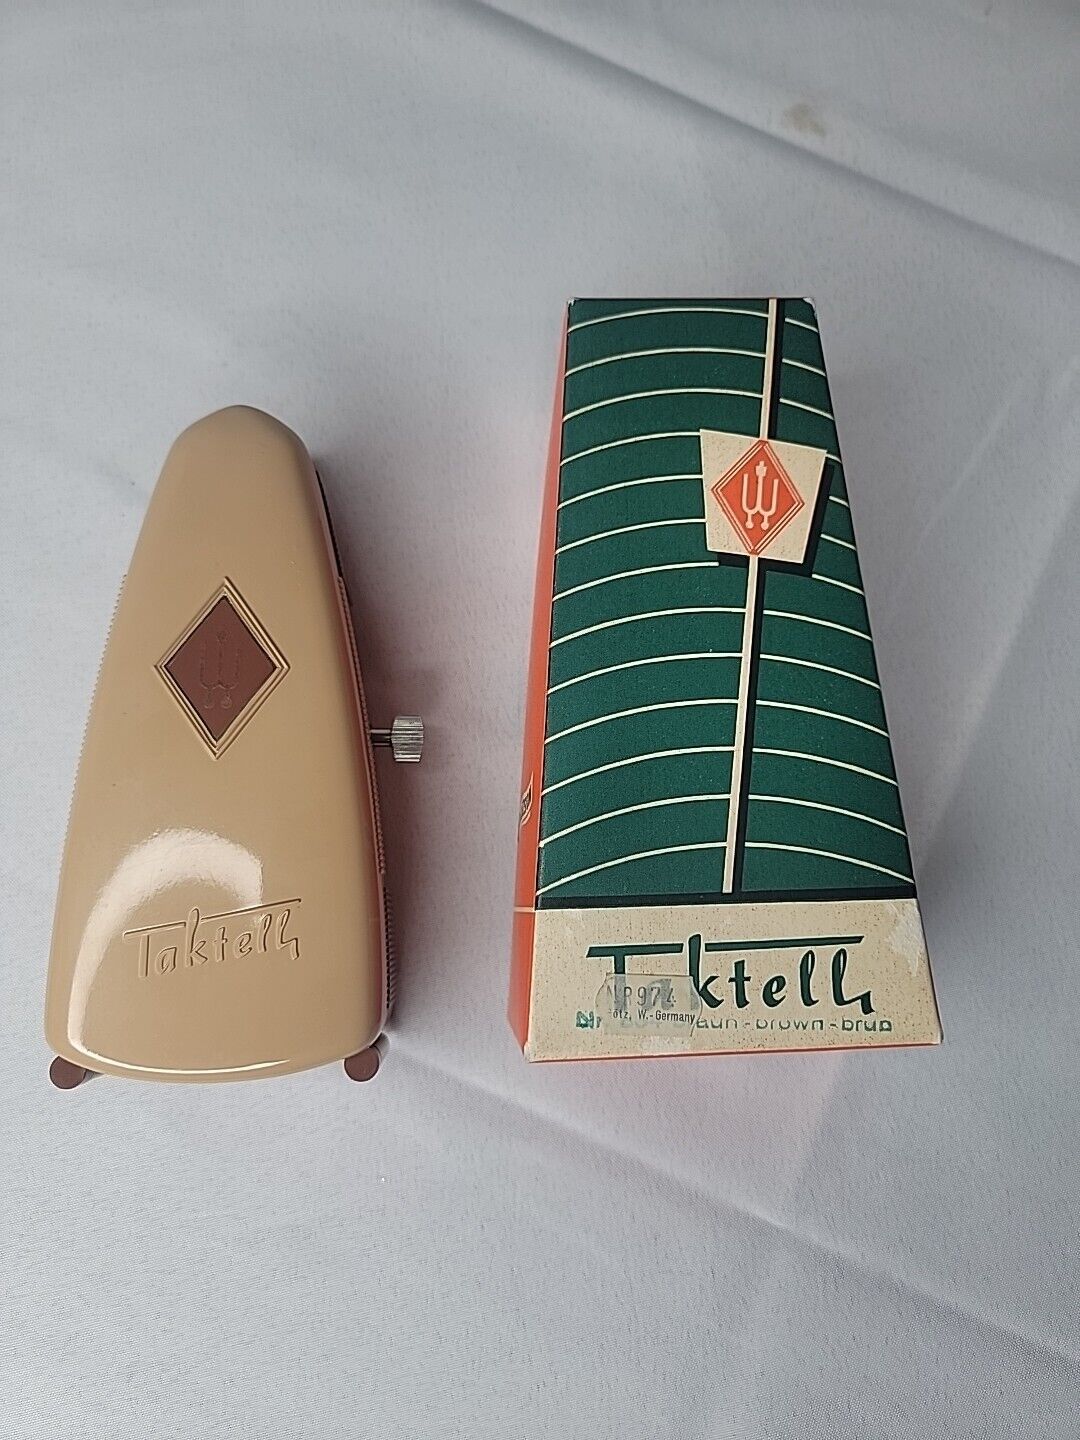 Vintage Taktell Wittner Prazision Metronome No 974. In box